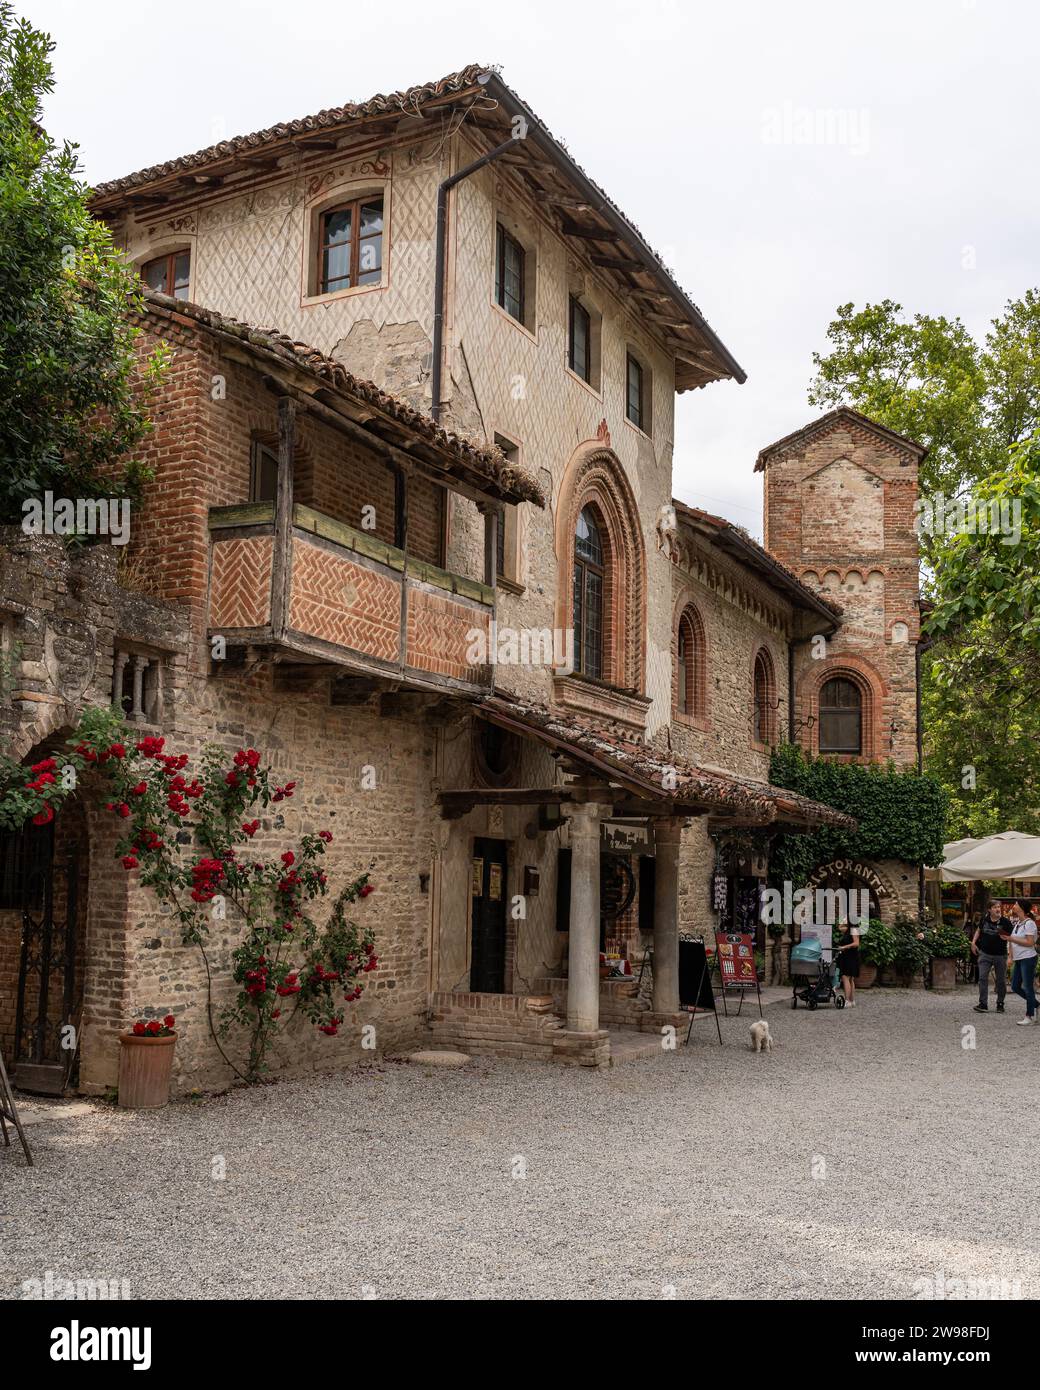 A picturesque village of Grazzano Visconti in Emilia-Romagna, Italy, with historical architecture. Stock Photo